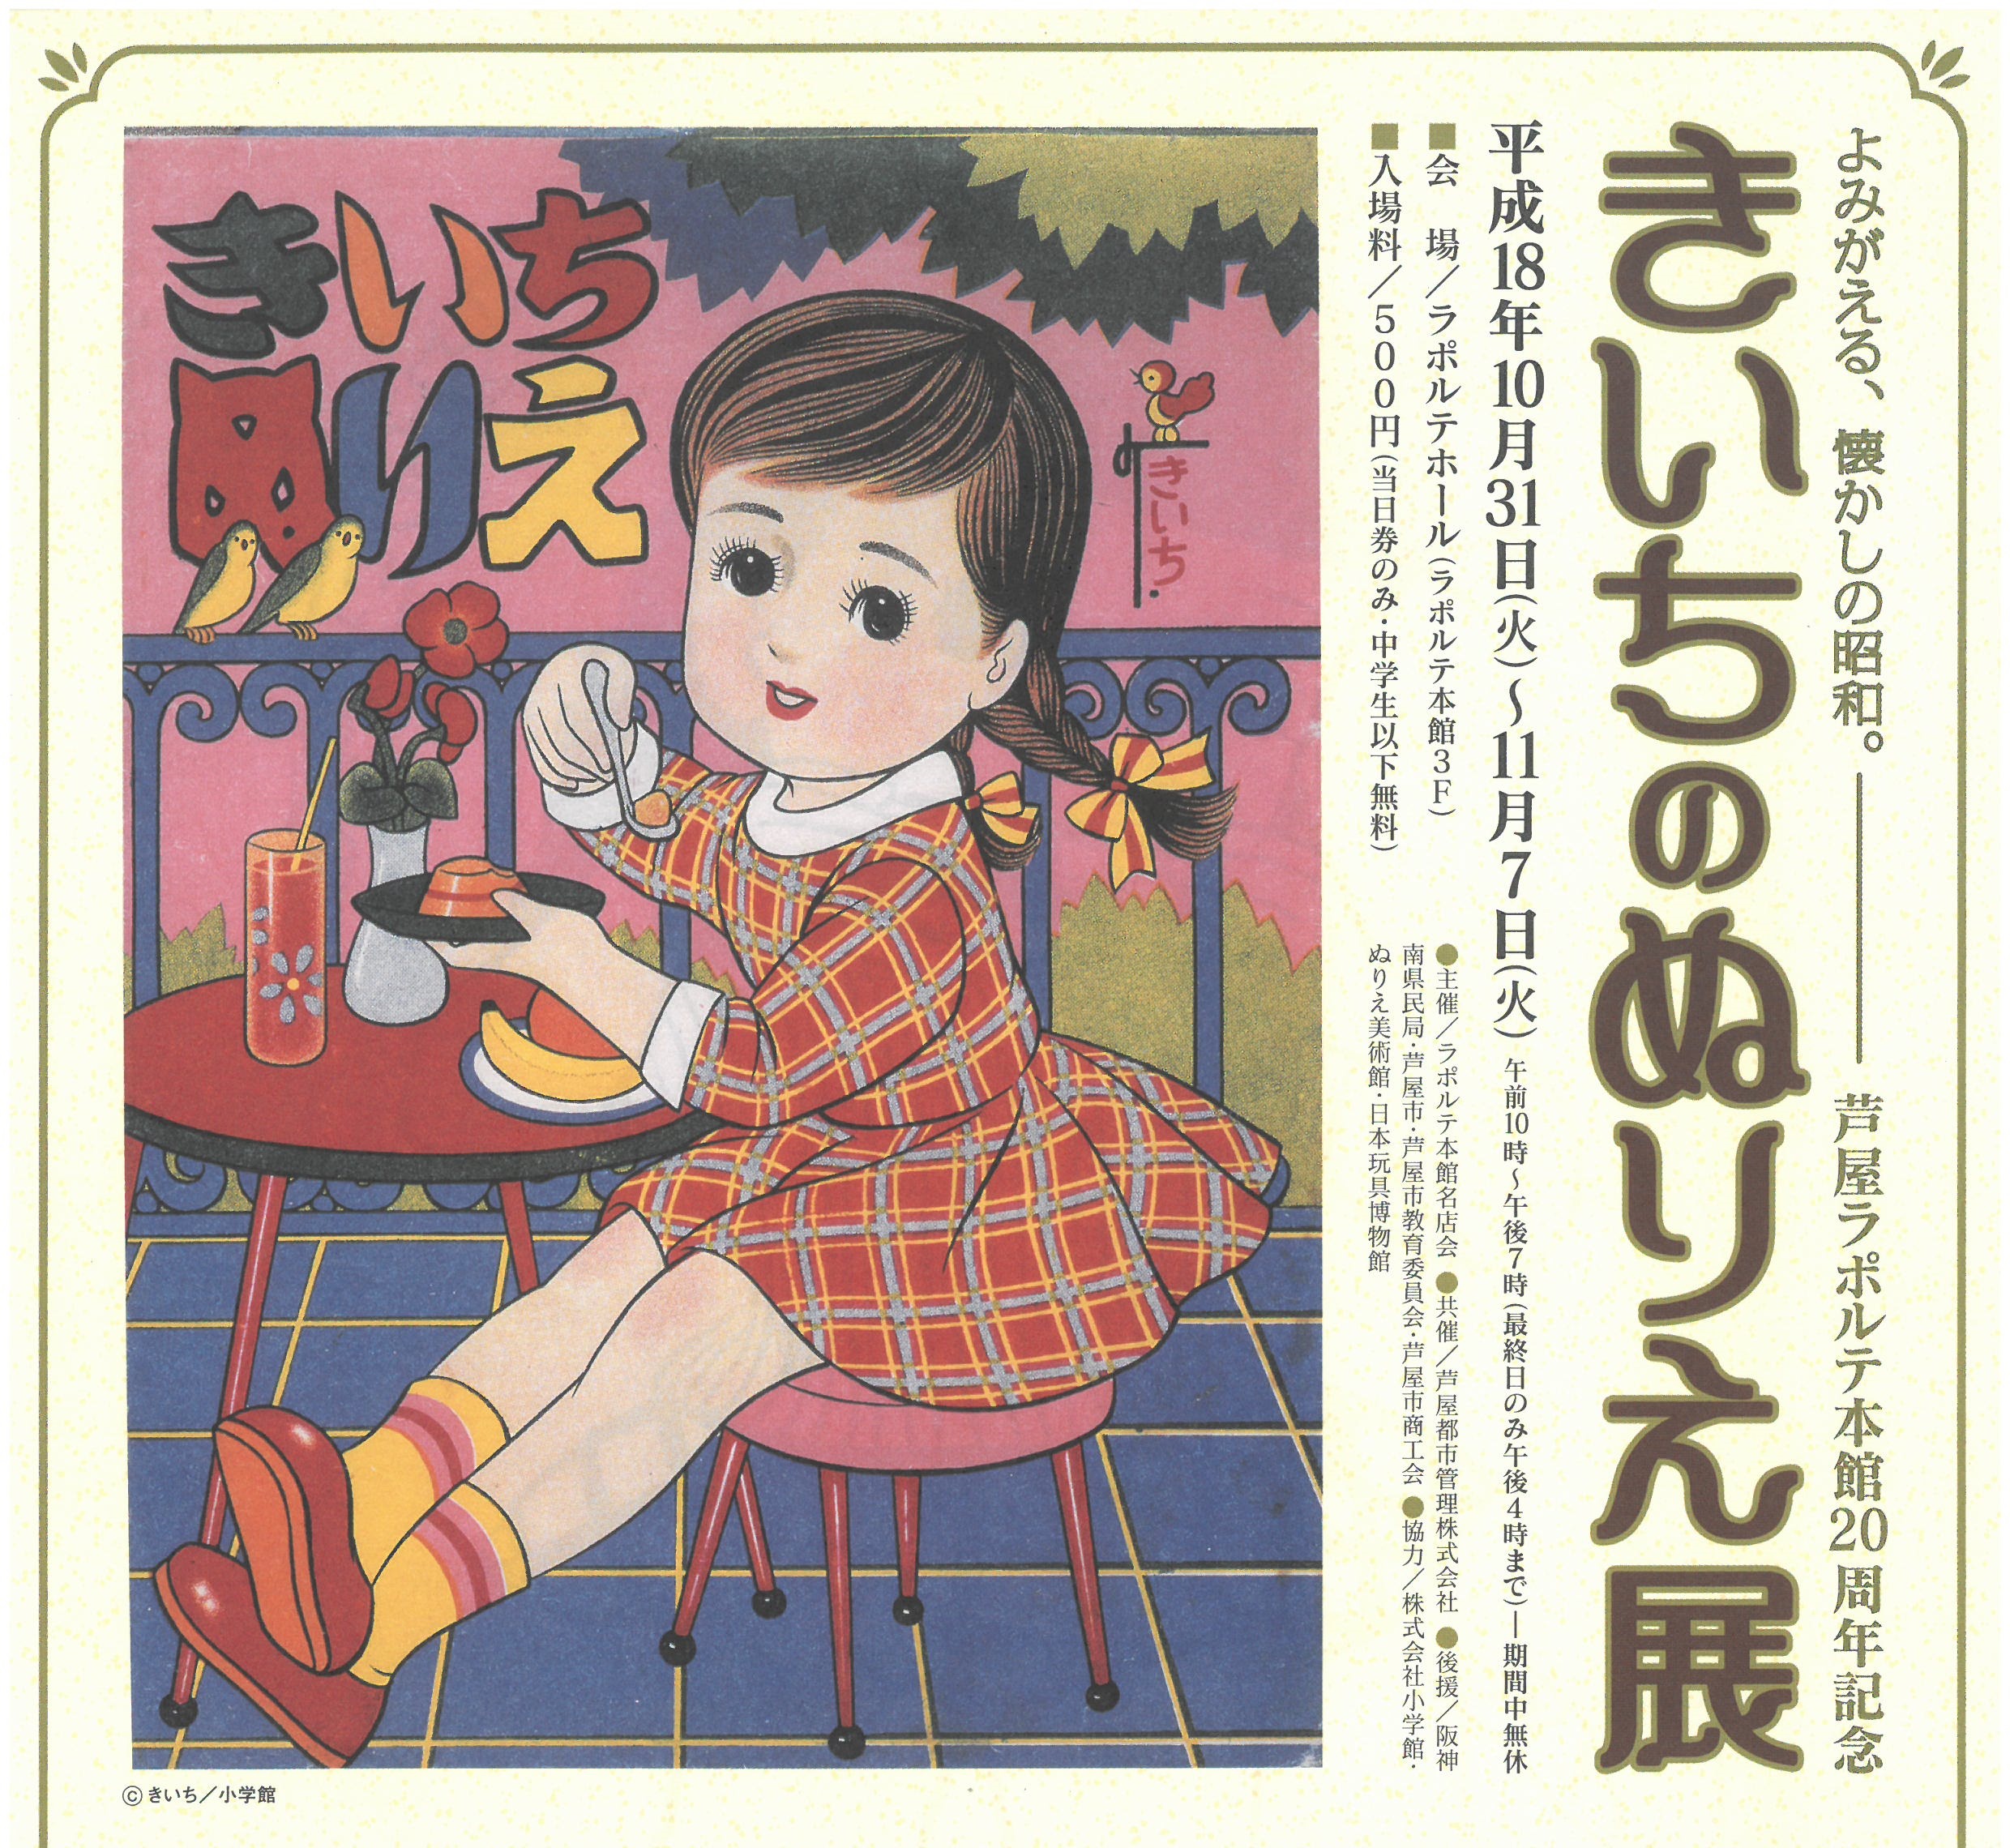 芦屋ラポルテ本館 きいちのぬりえ展 よみがえる 懐かしの昭和 日本玩具博物館